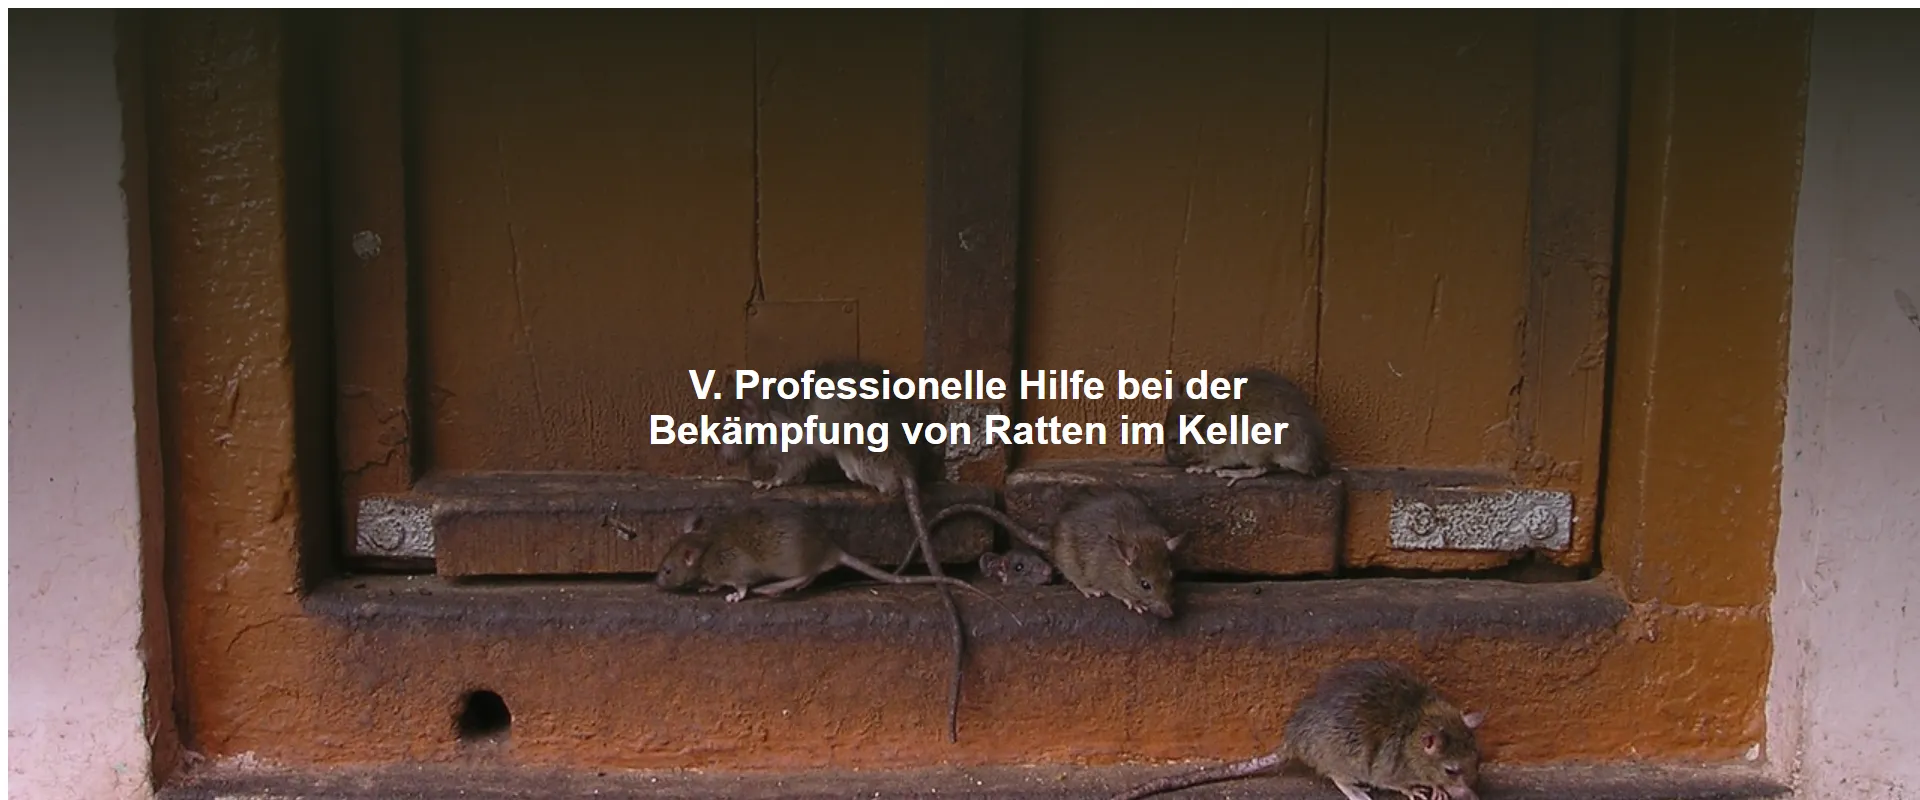 Professionelle Hilfe bei der Bekämpfung von Ratten im Keller